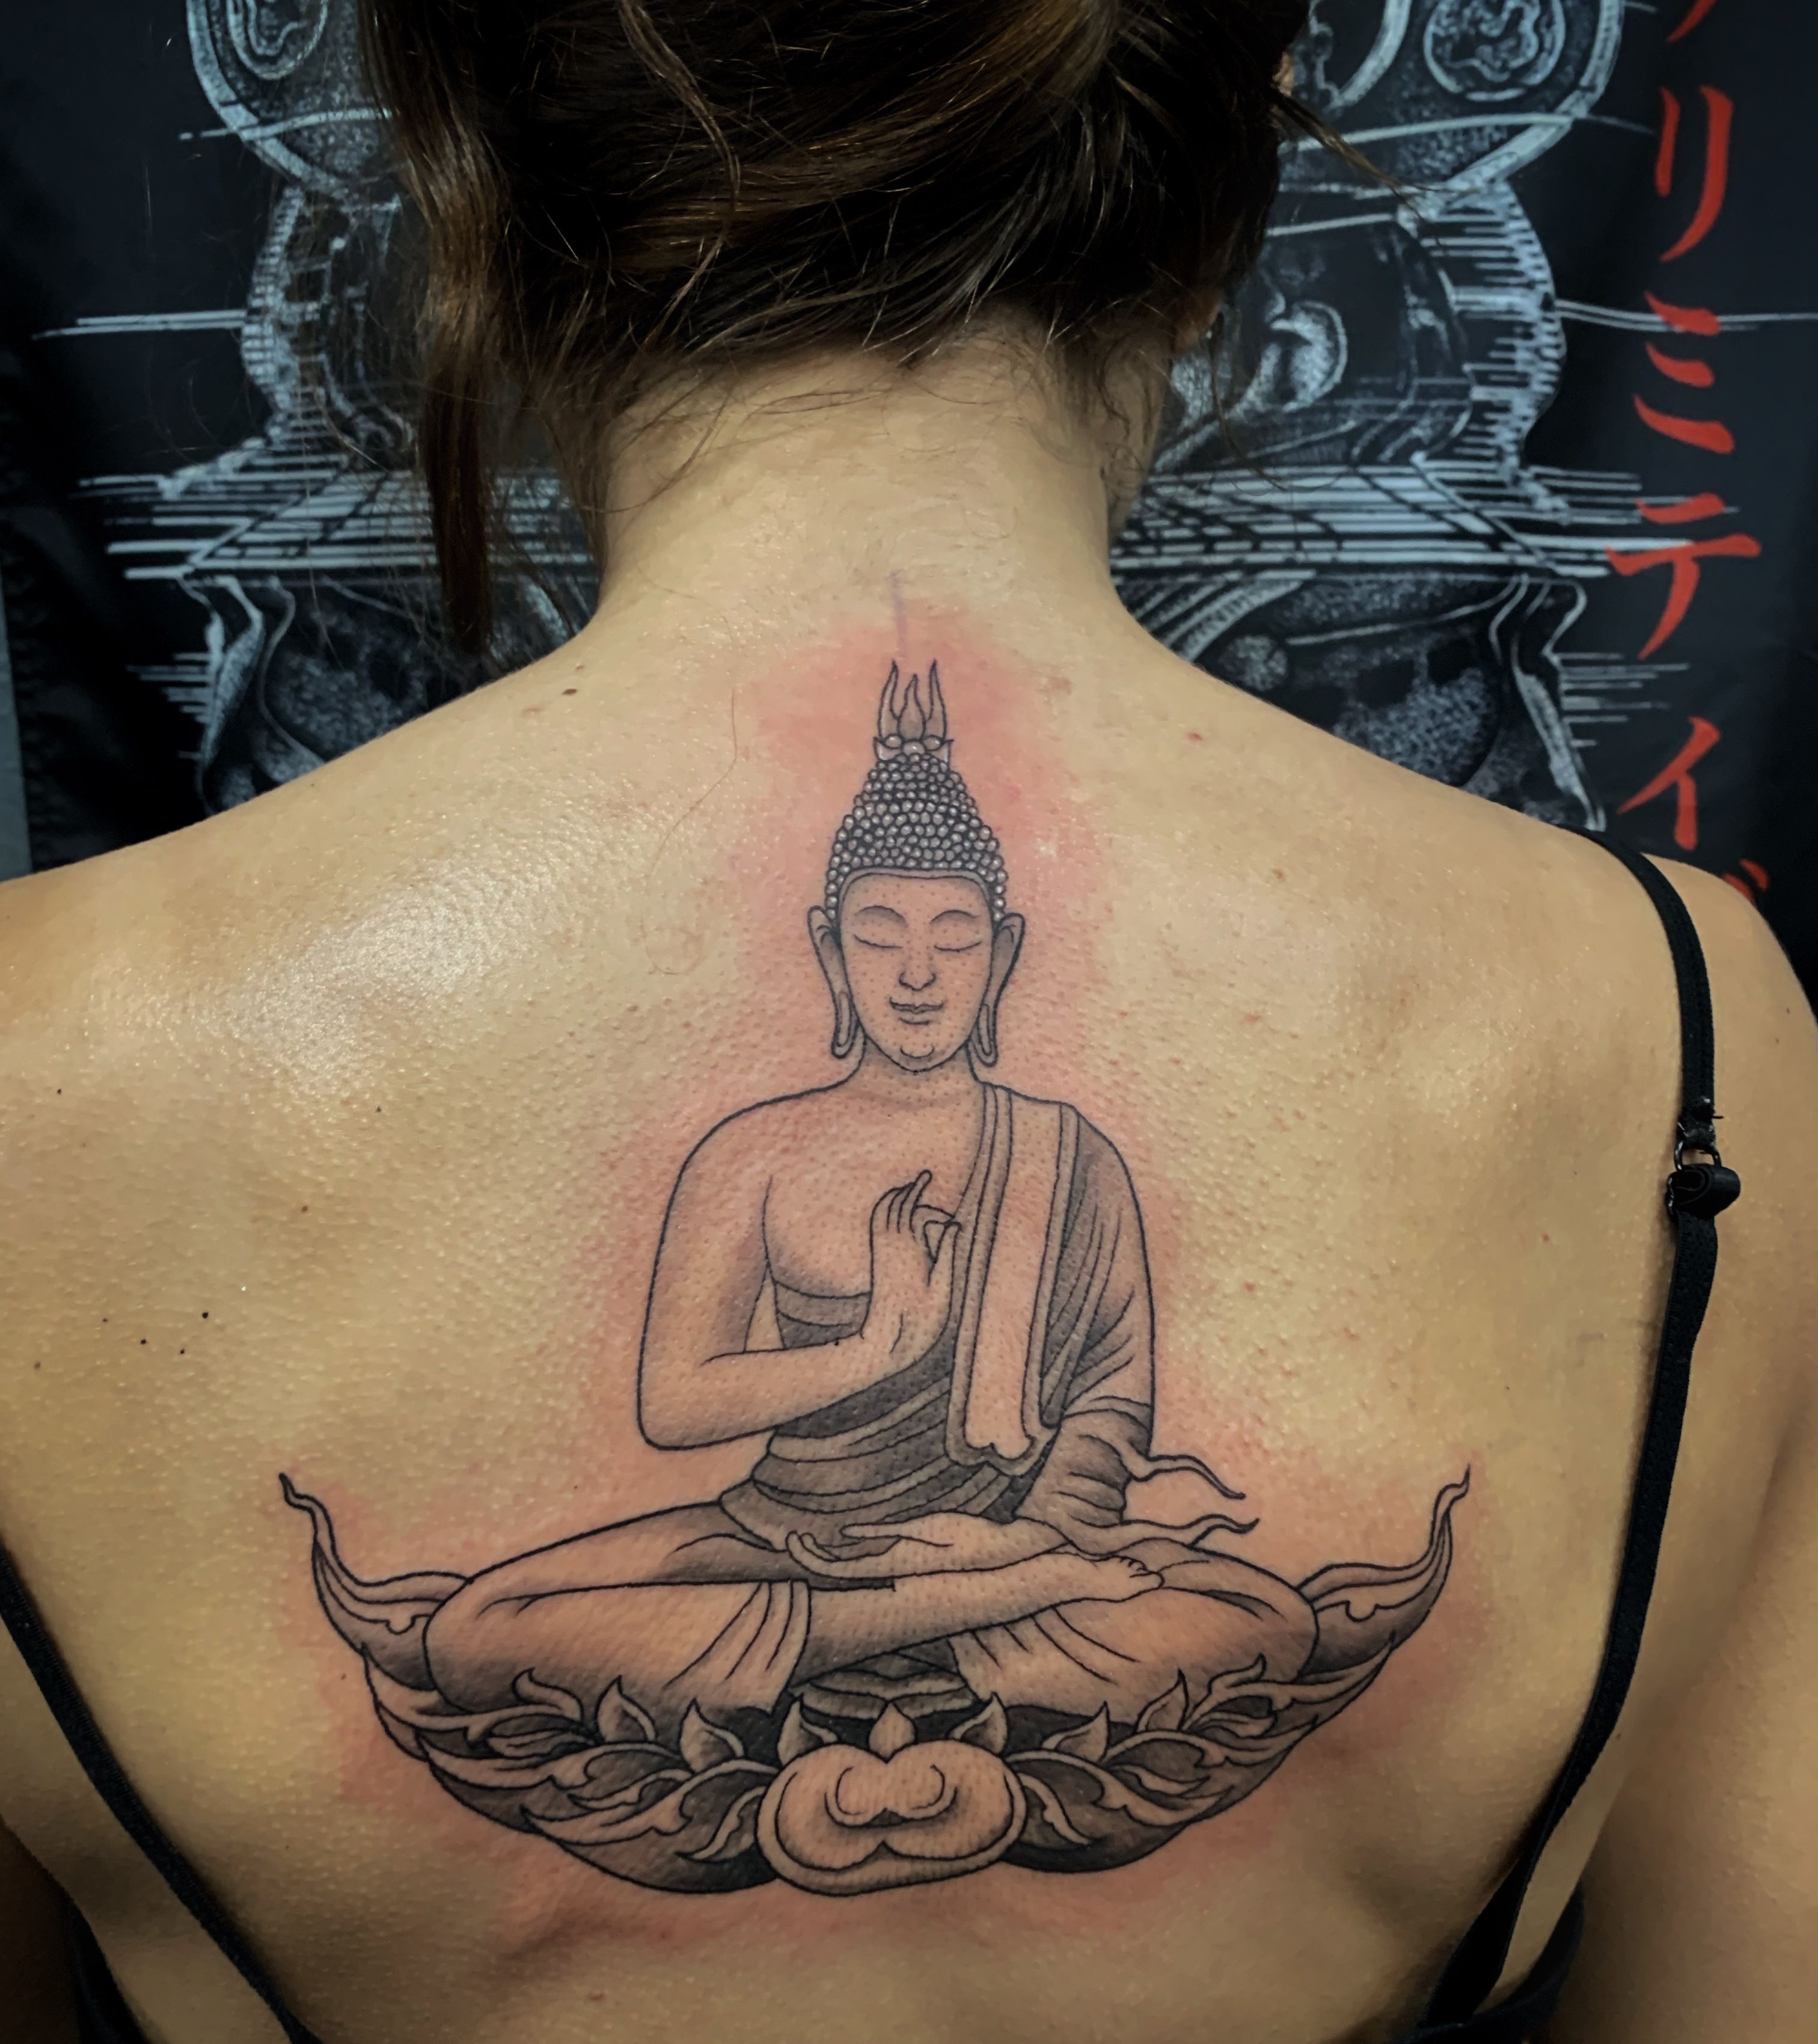 Buddhist style full back tattoo - Tattoomagz.com › Tattoo Designs /  Ink-Works Gallery | Full back tattoos, Back tattoo, Buddha tattoo